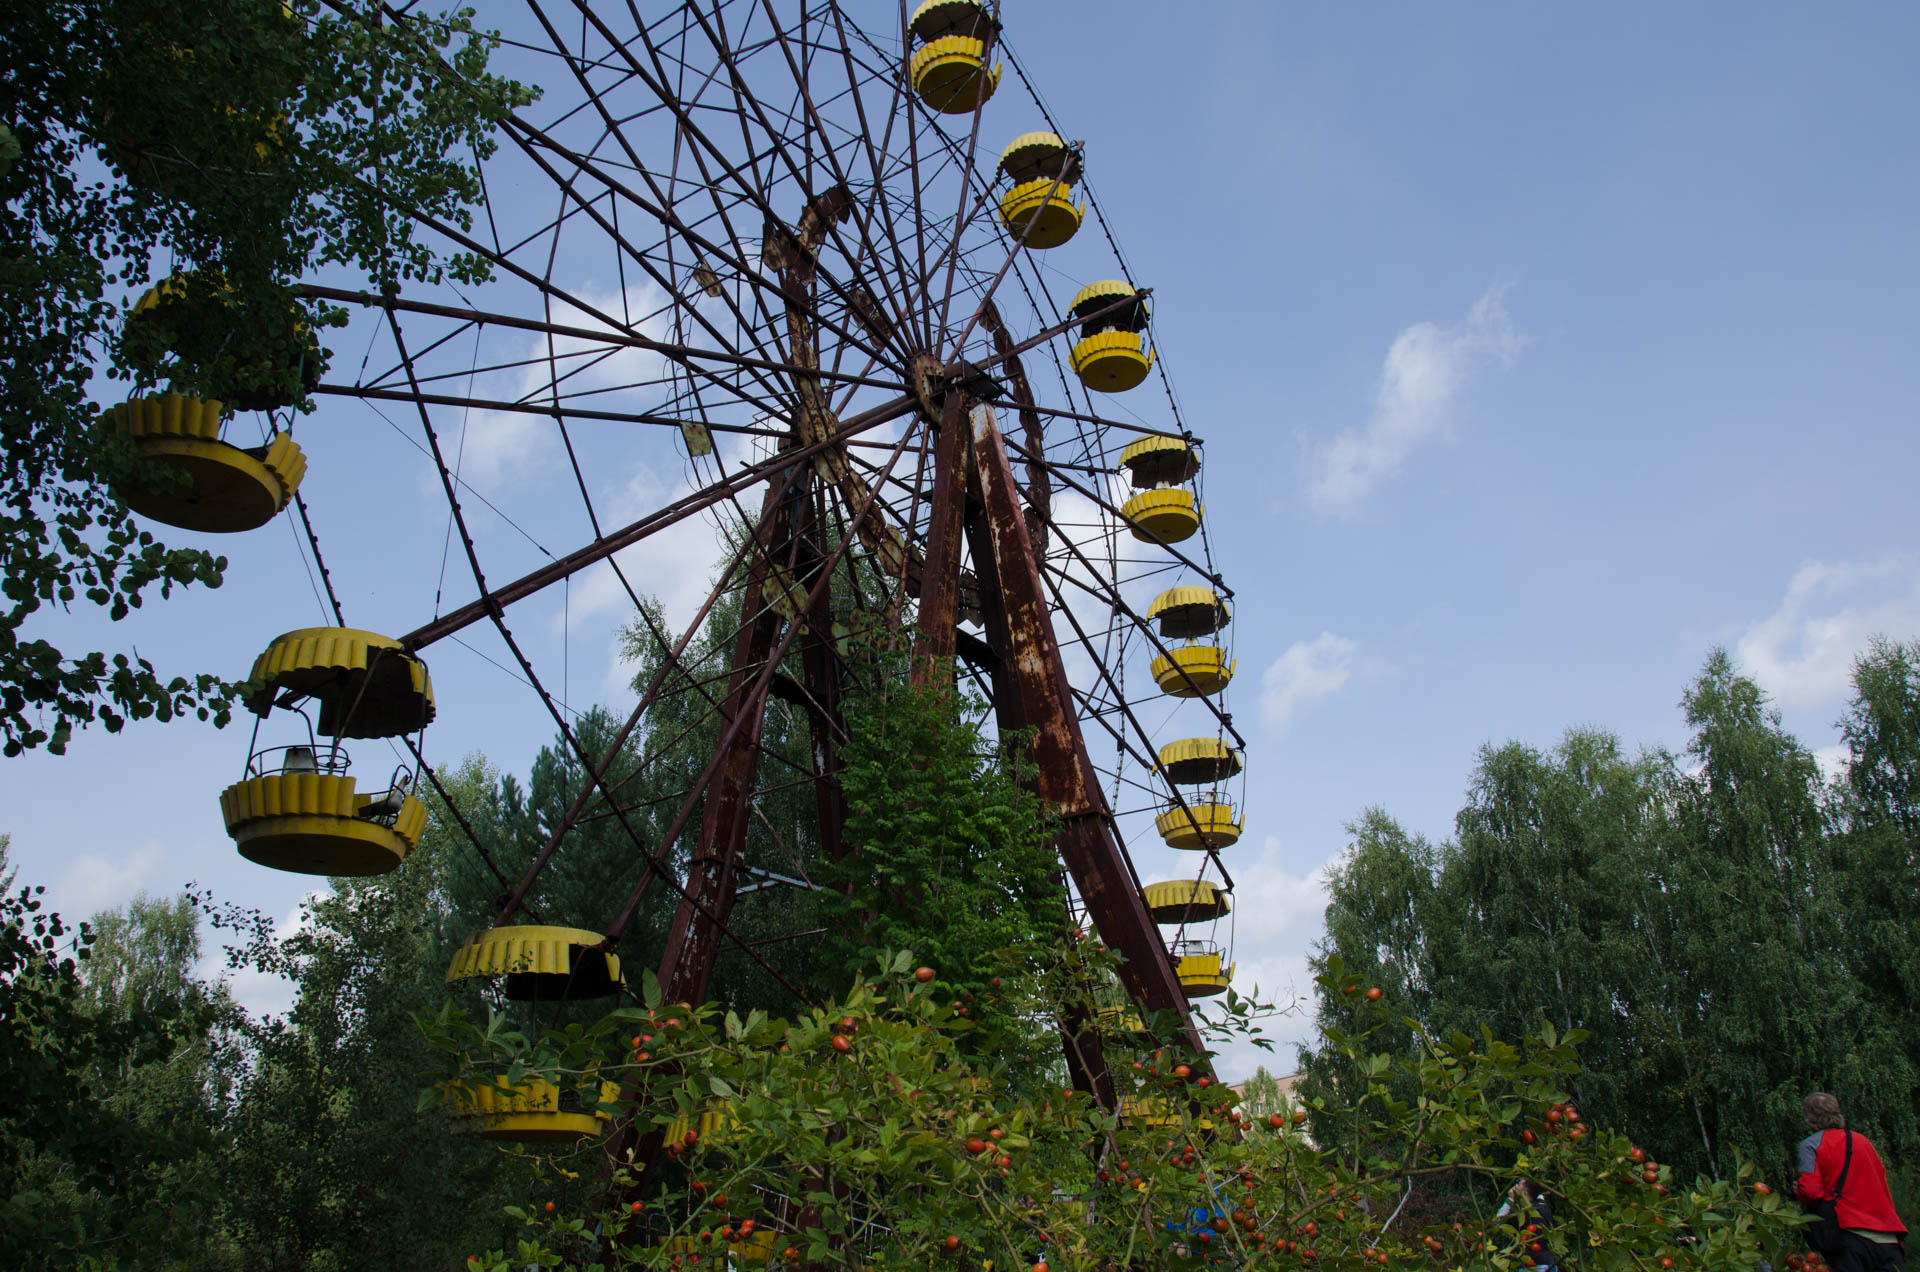 Famous Ferris wheel